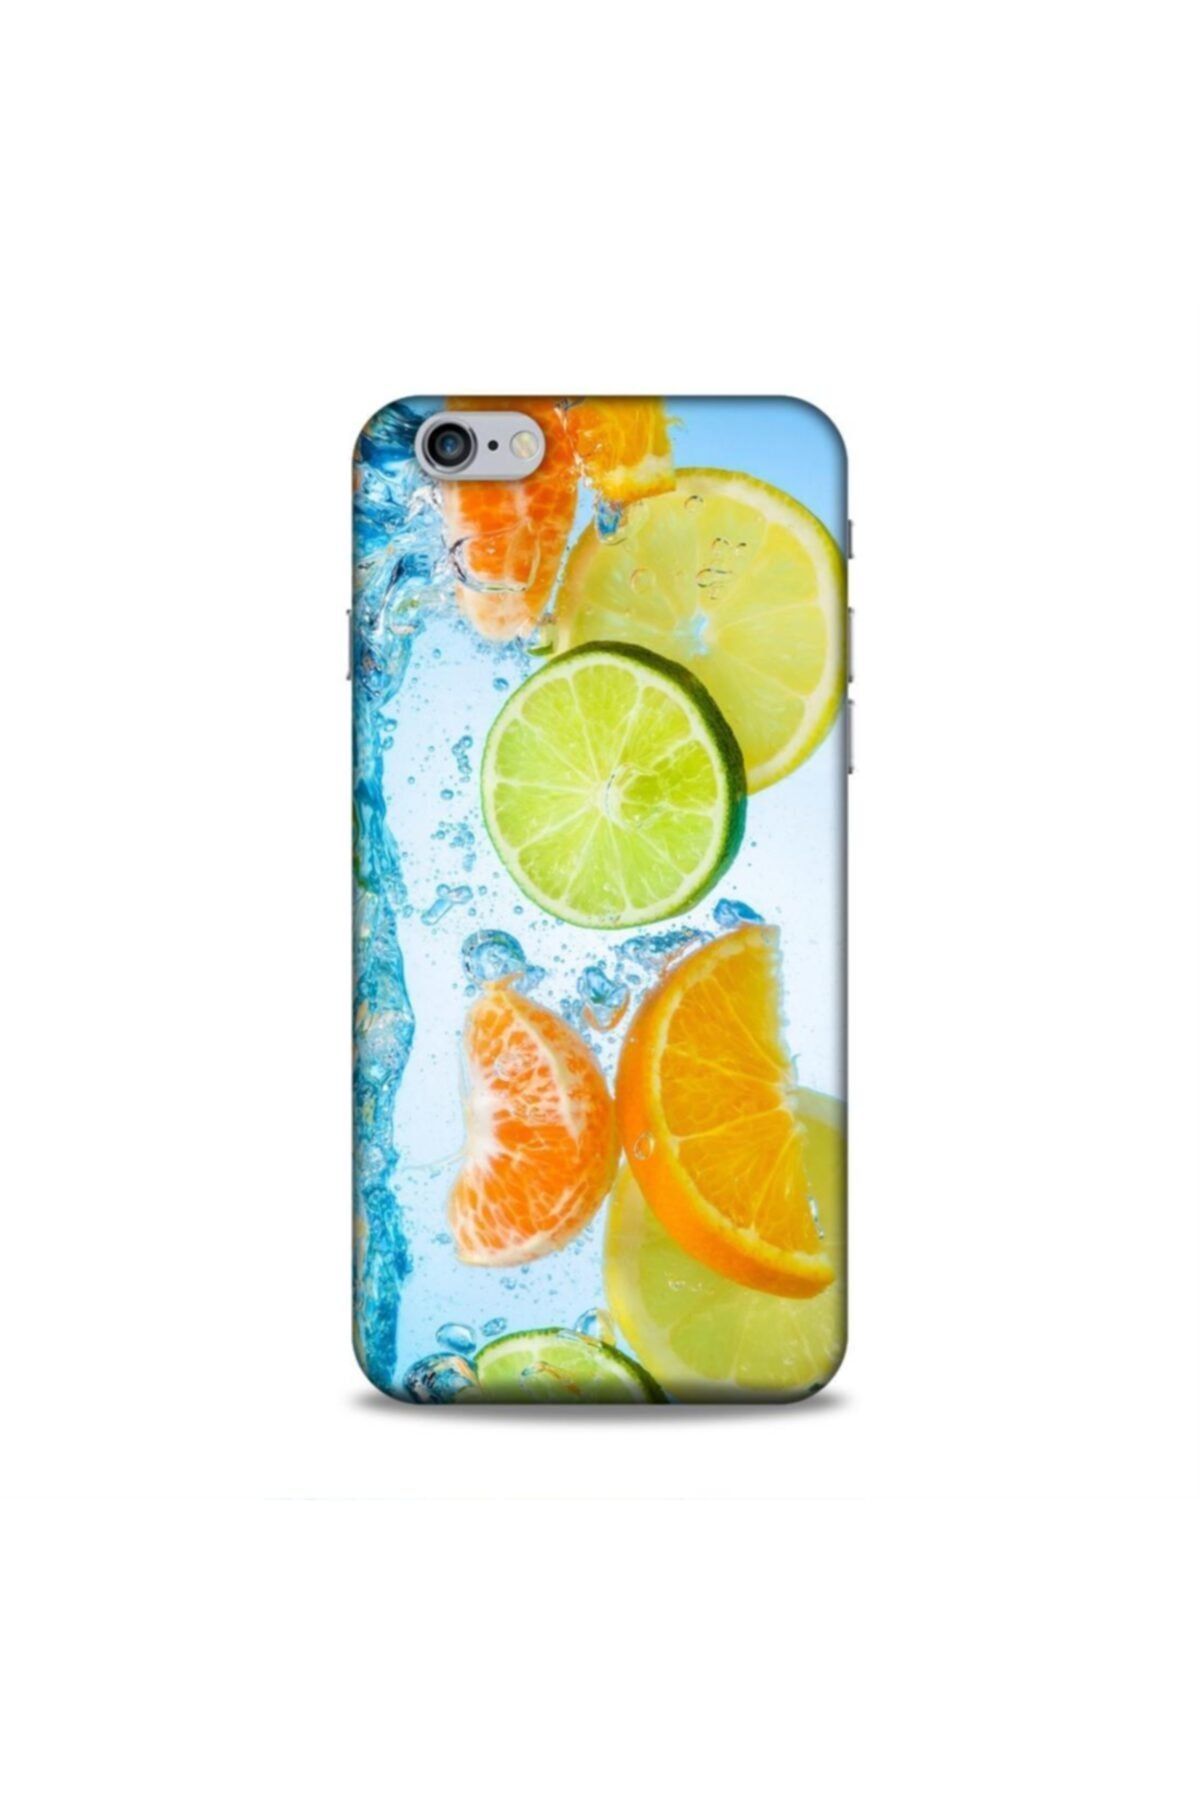 Pickcase Apple Iphone 6s Plus Kılıf Desenli Arka Kapak Limonlar